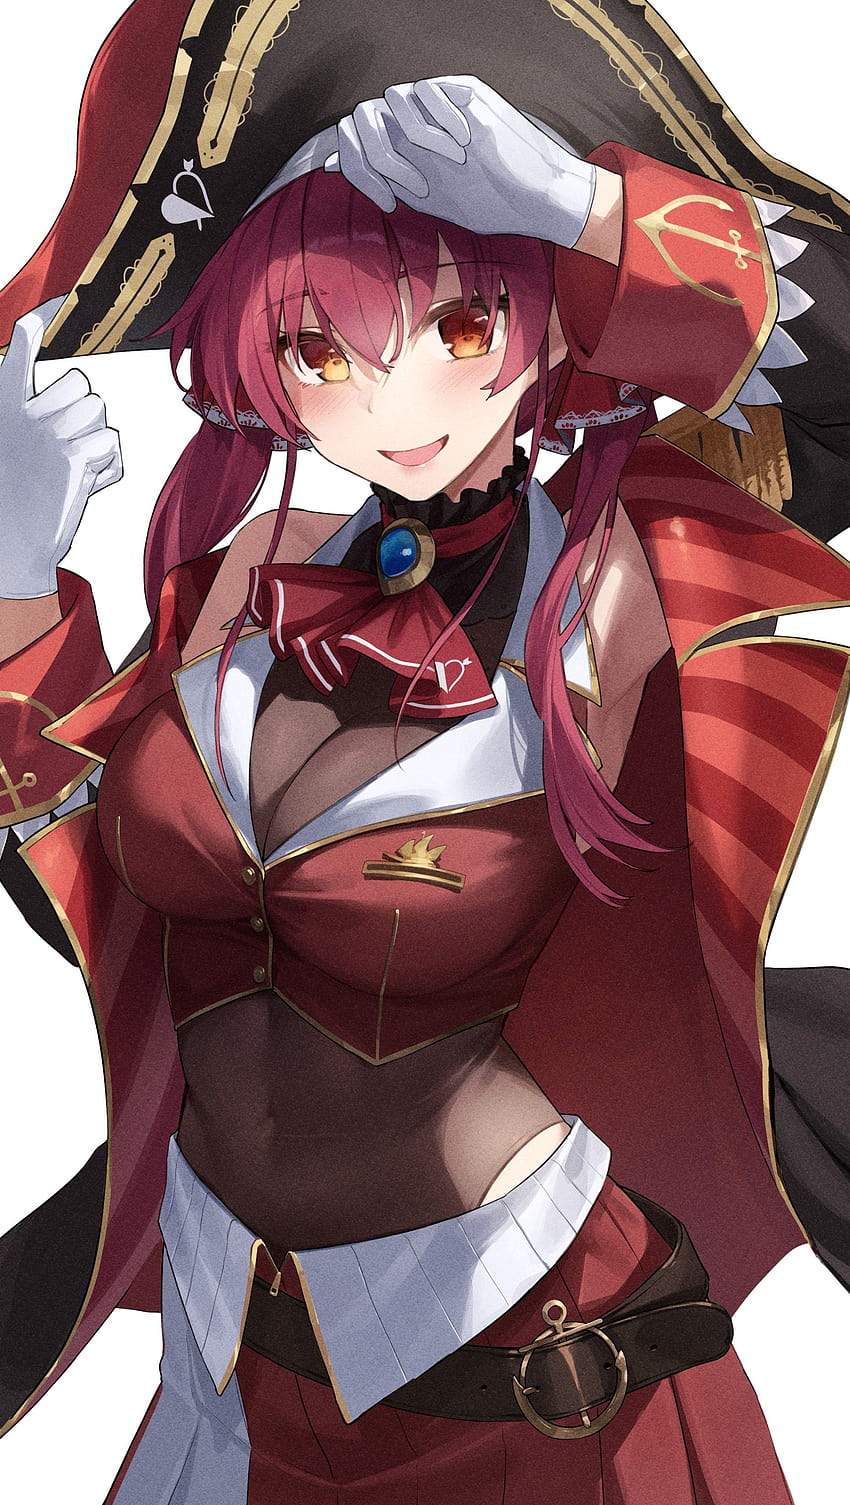 Beautiful Glowing Pirate General Anime Girl